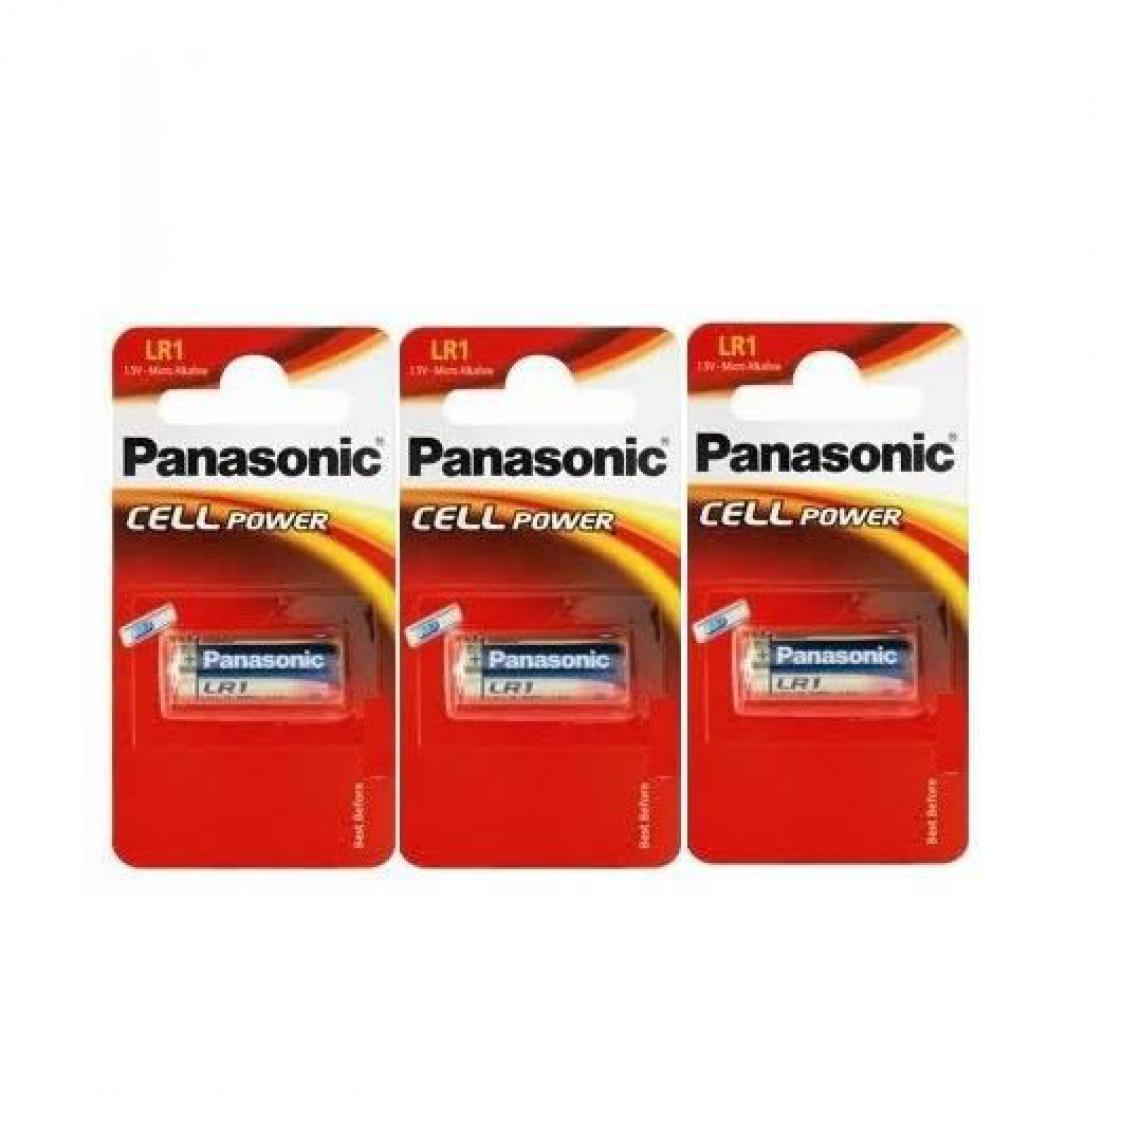 Panasonic - Rasage Electrique - Panasonic lot de 3 piles LR - Piles standard